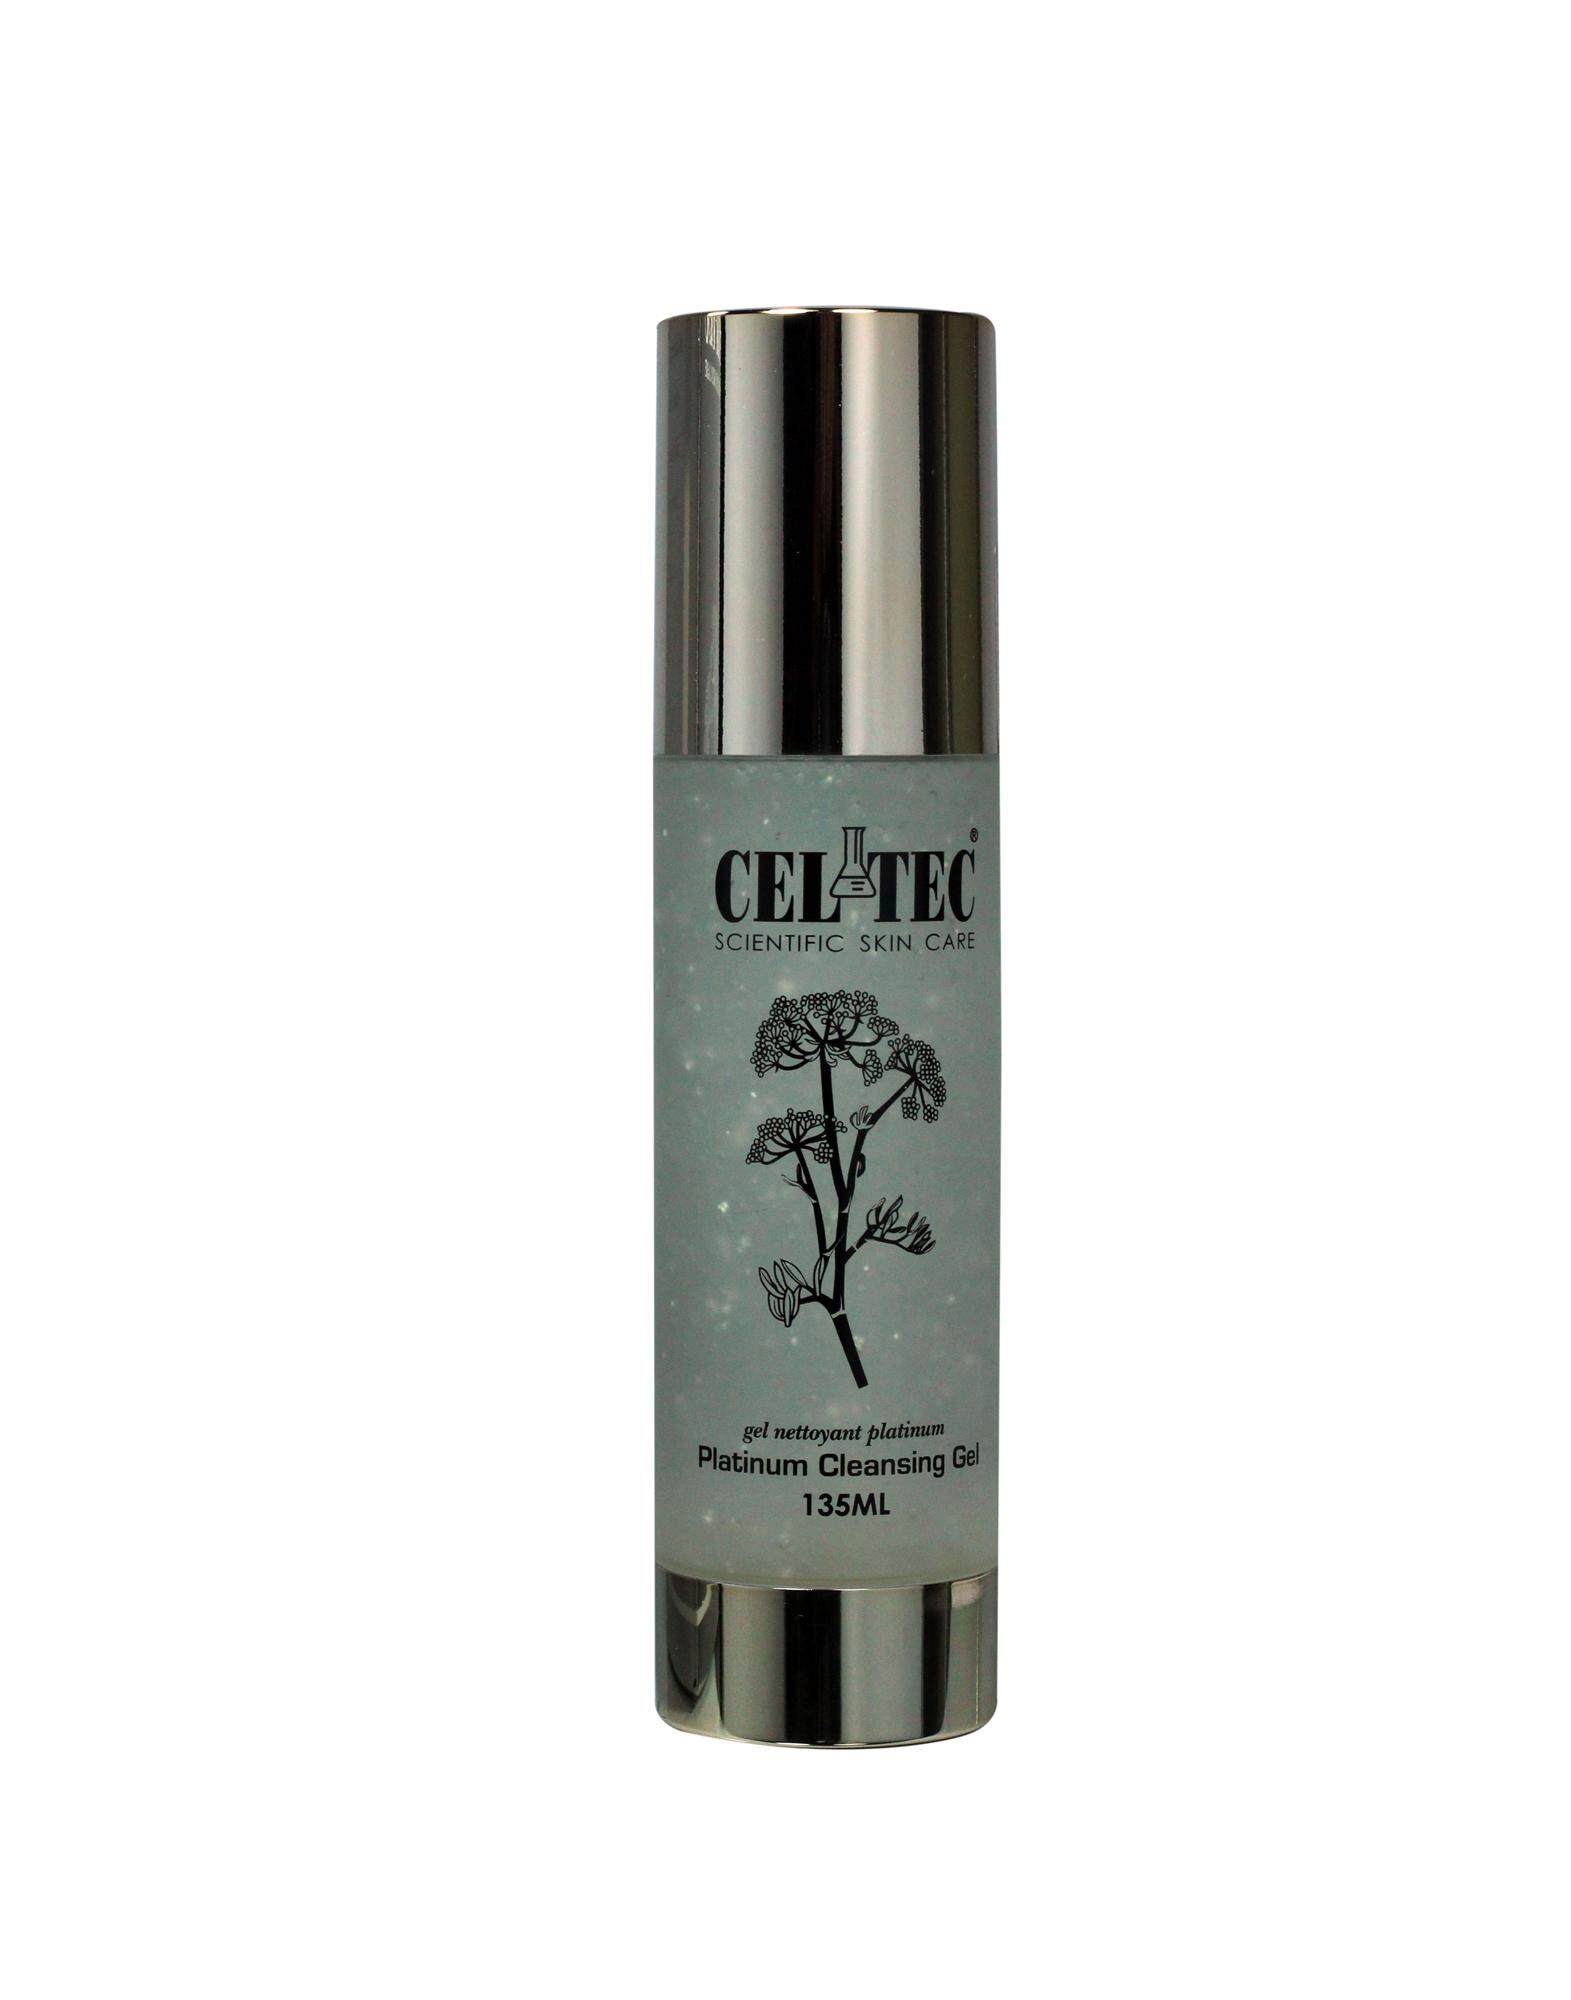 CELTEC Platinum Cleansing Gel  135ml